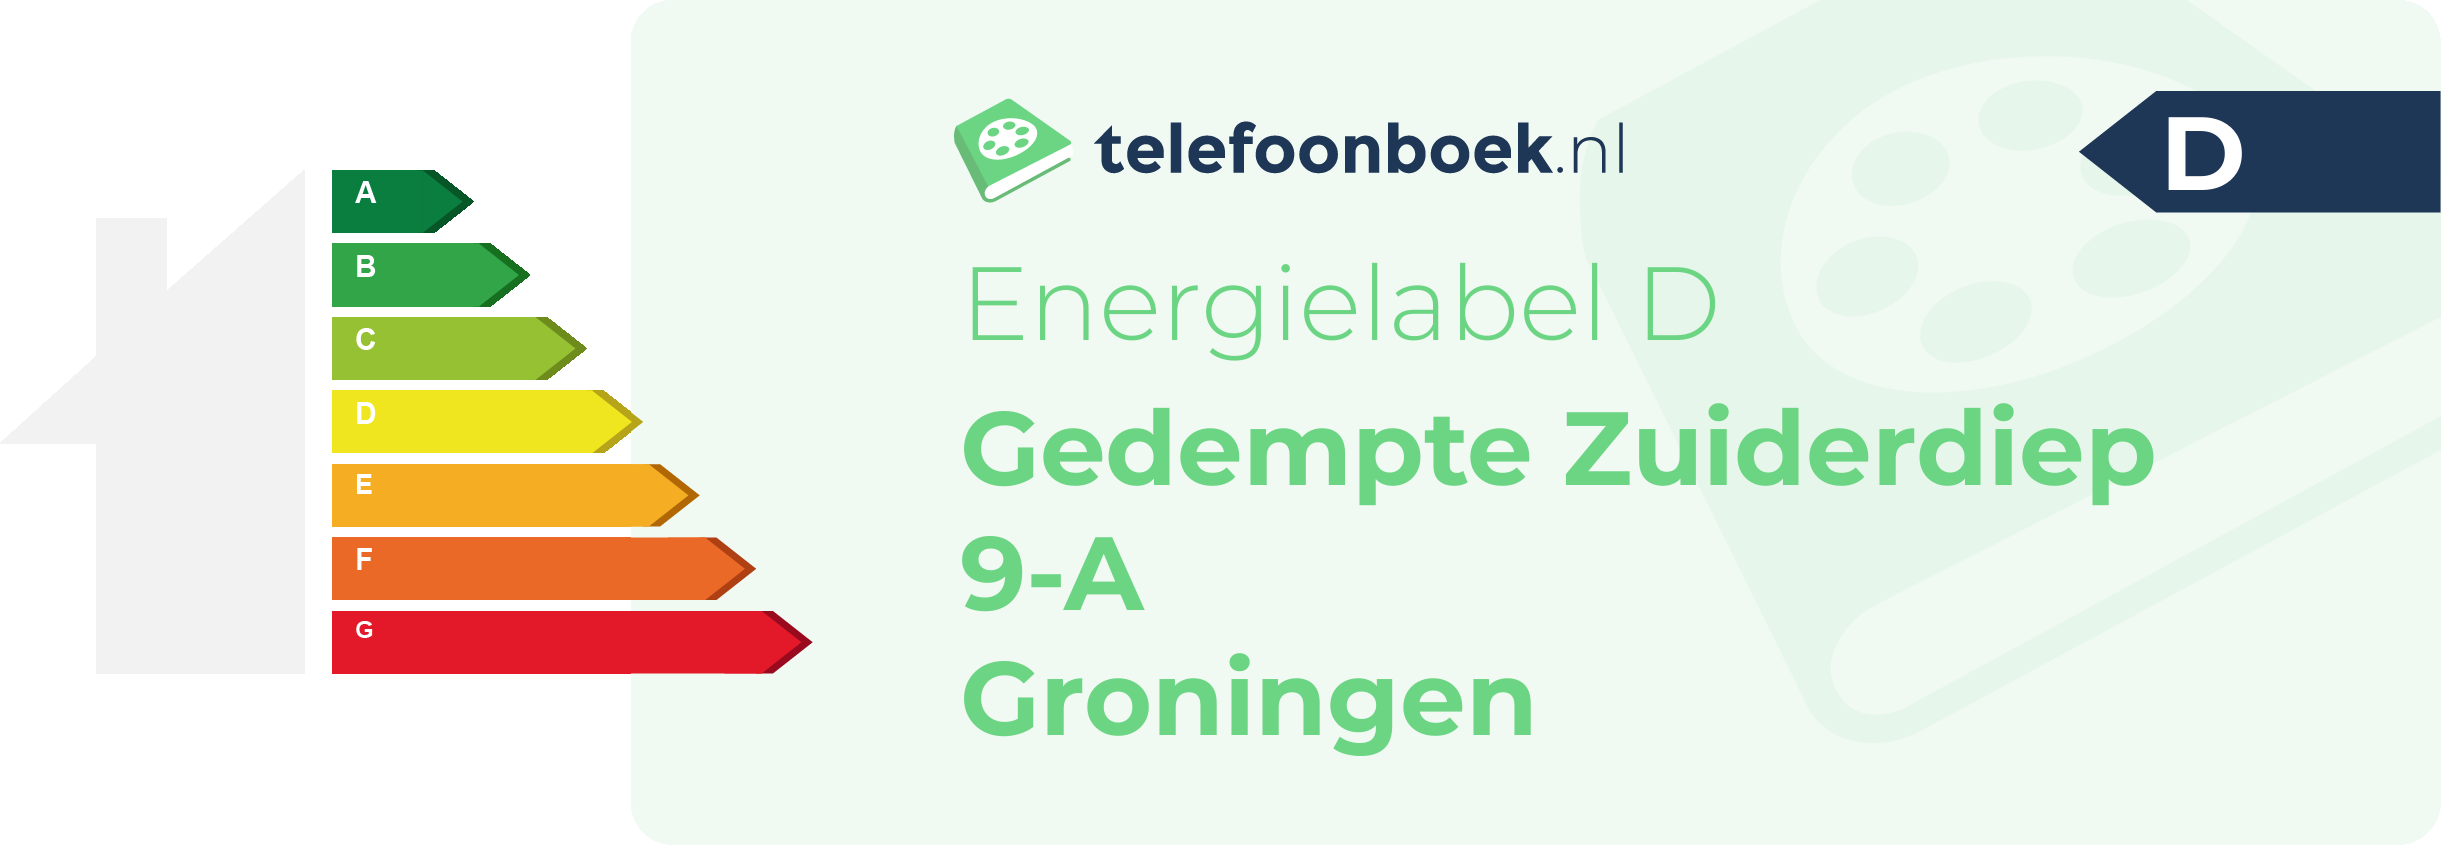 Energielabel Gedempte Zuiderdiep 9-A Groningen